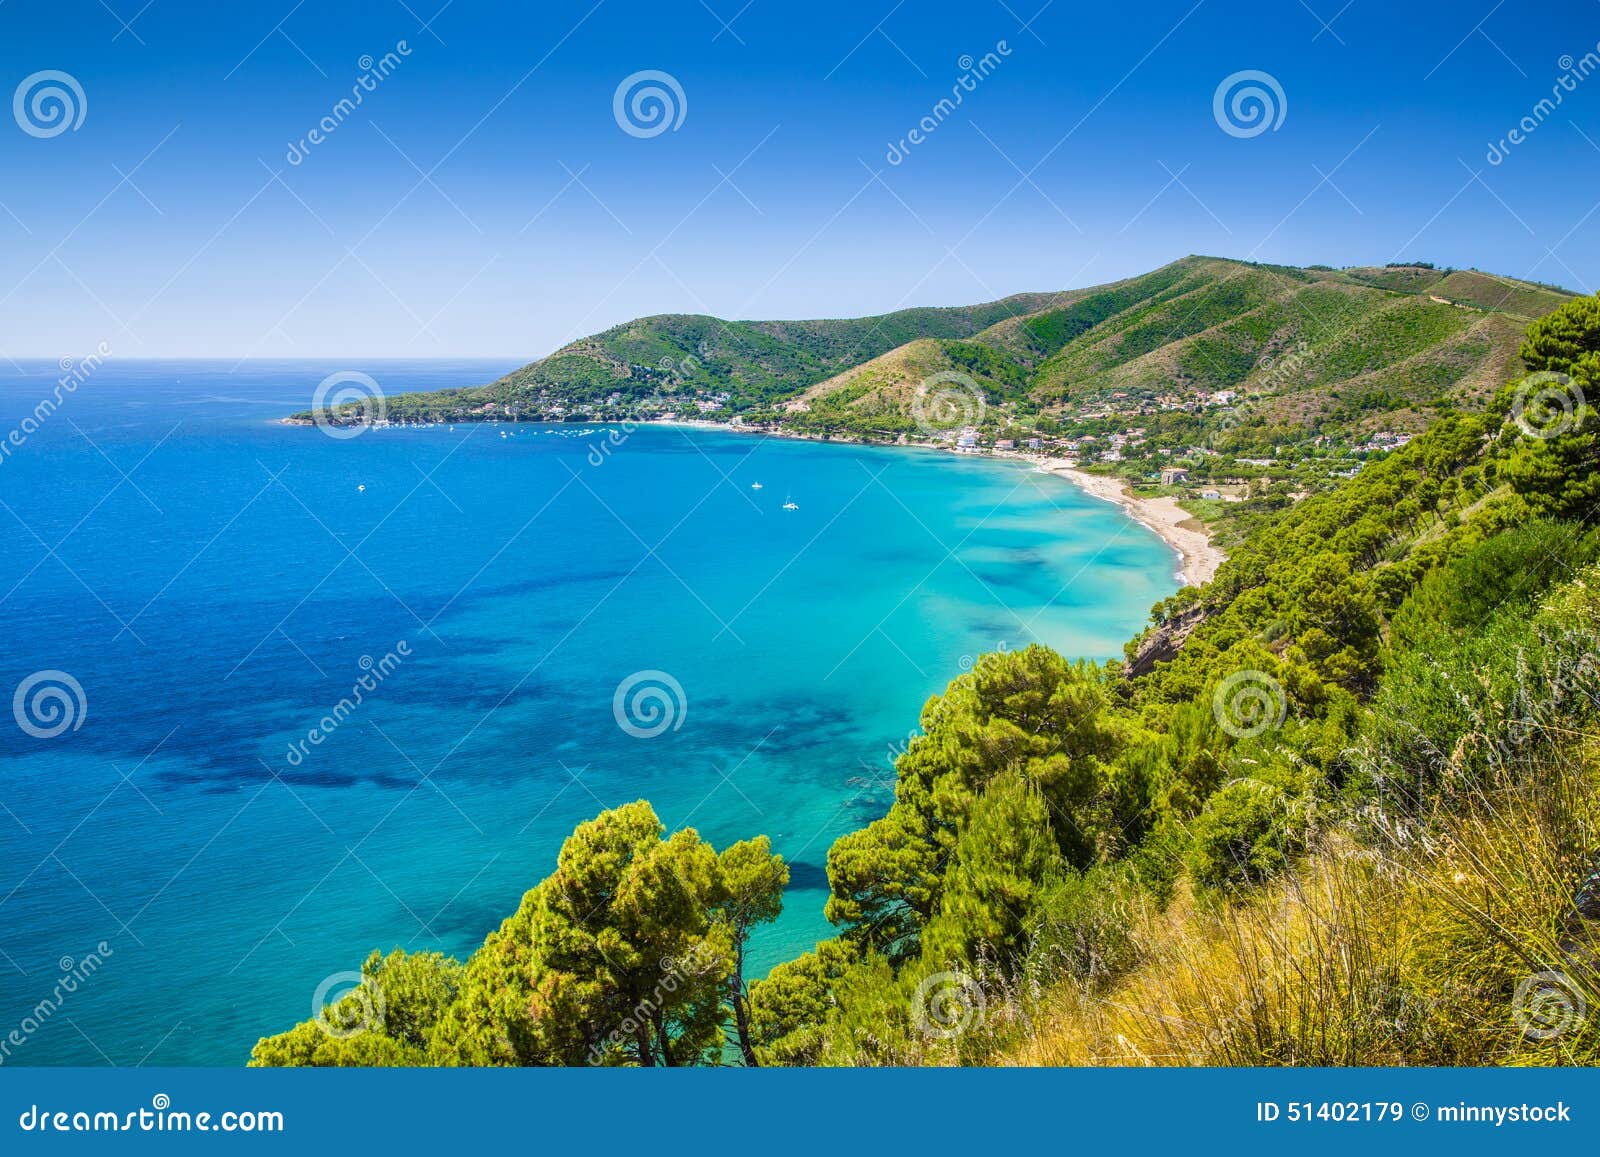 cilentan coast, province of salerno, campania, italy